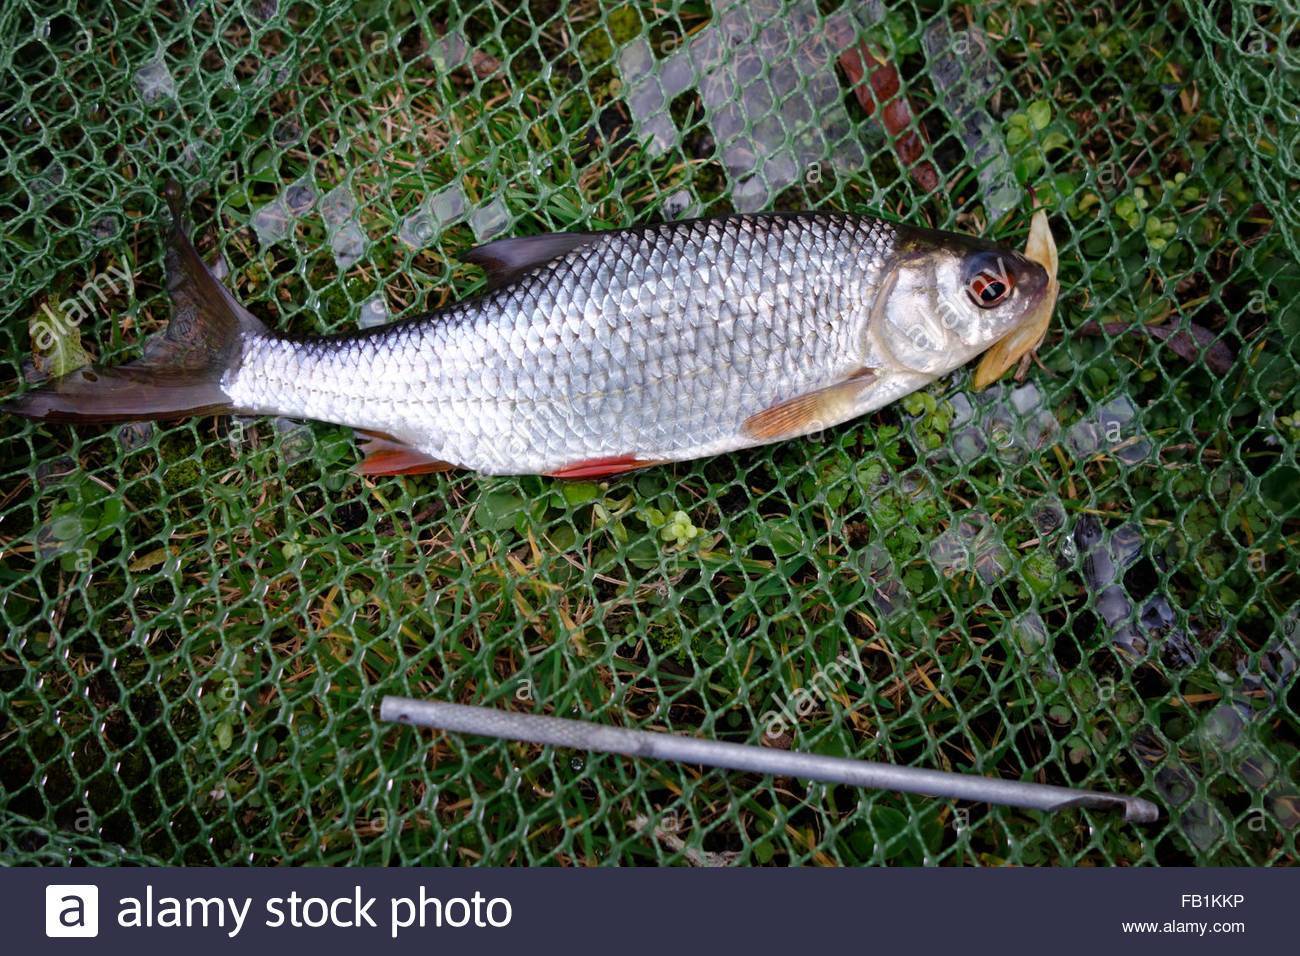 Рыба плотва (сорога): где живет, на что ловится